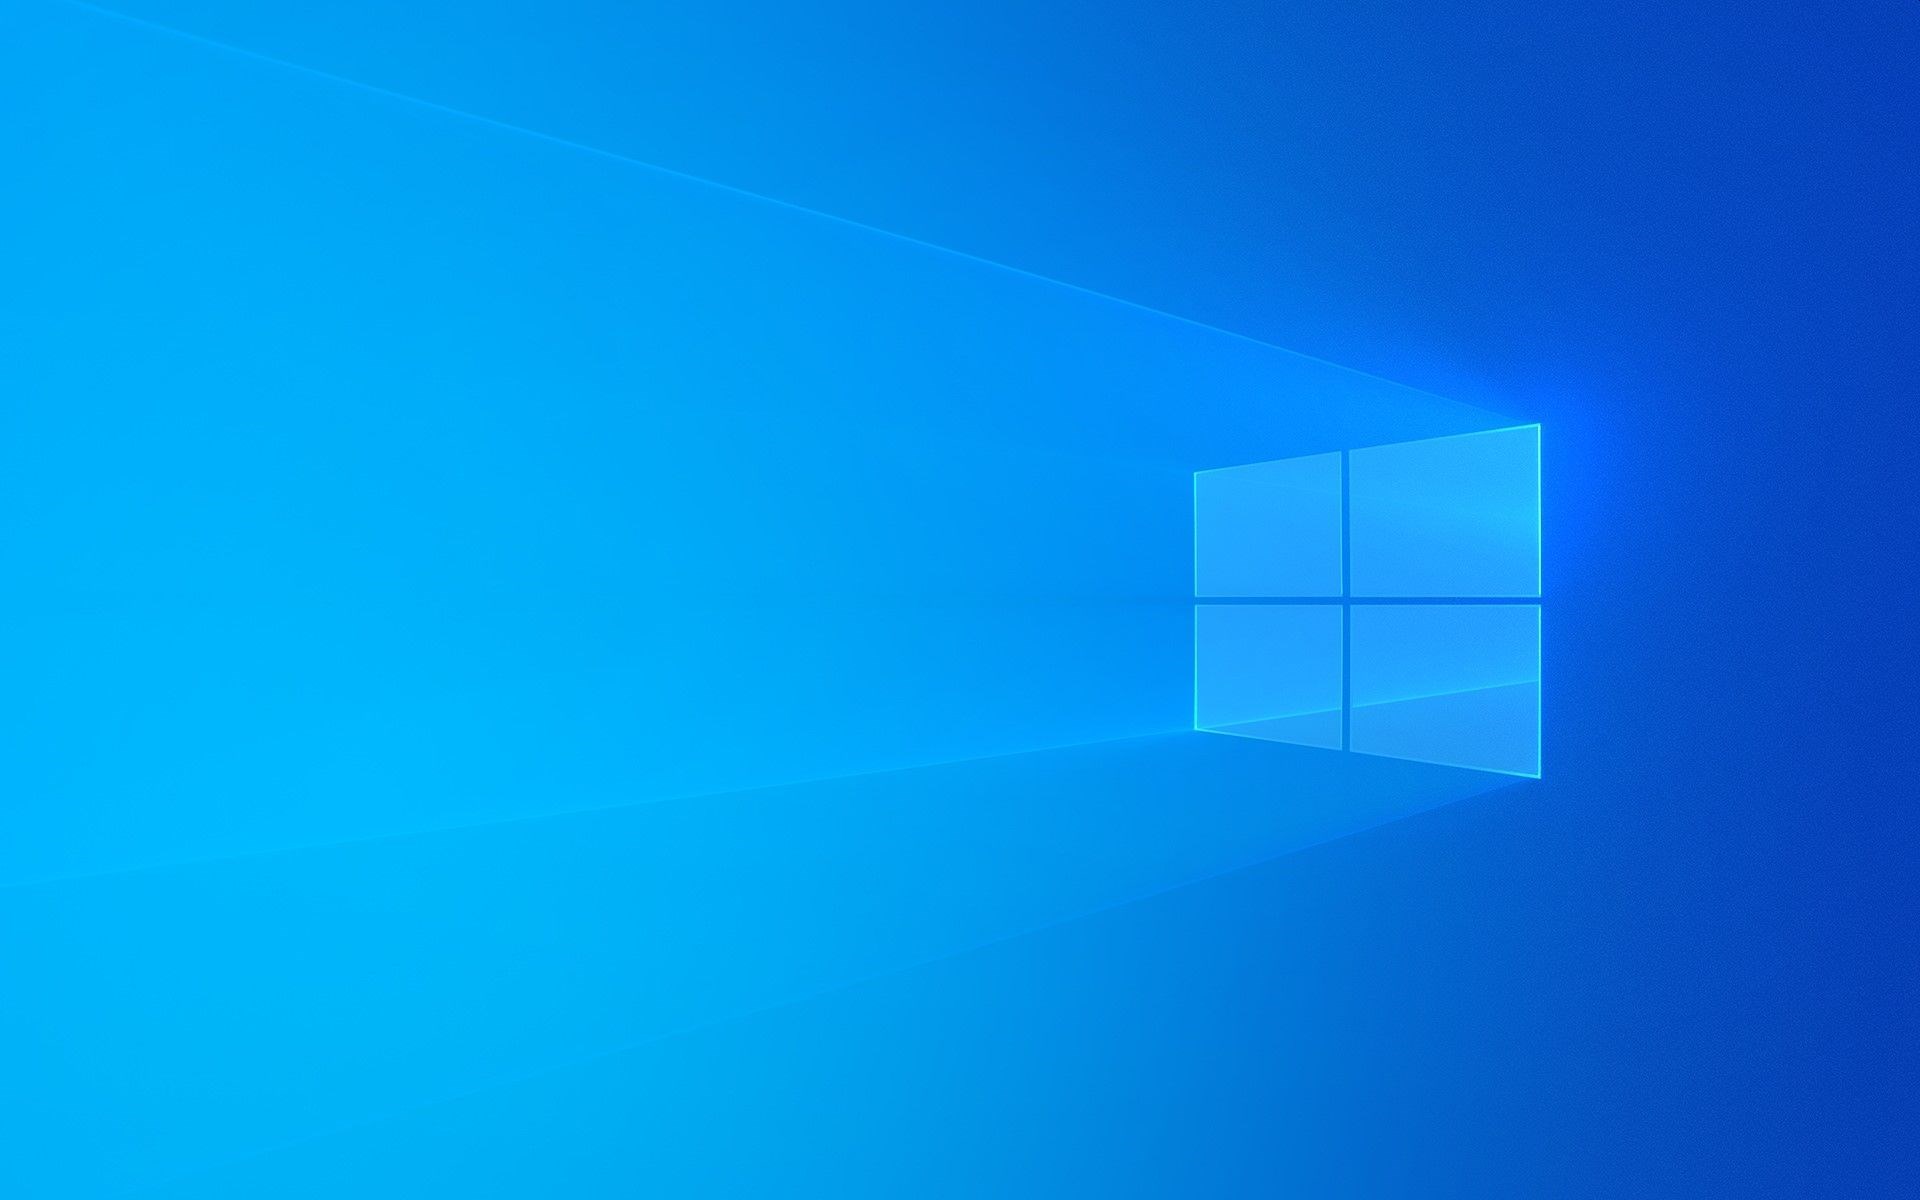 Windows 10, birçok hatayı düzelten önemli bir güncelleme aldı